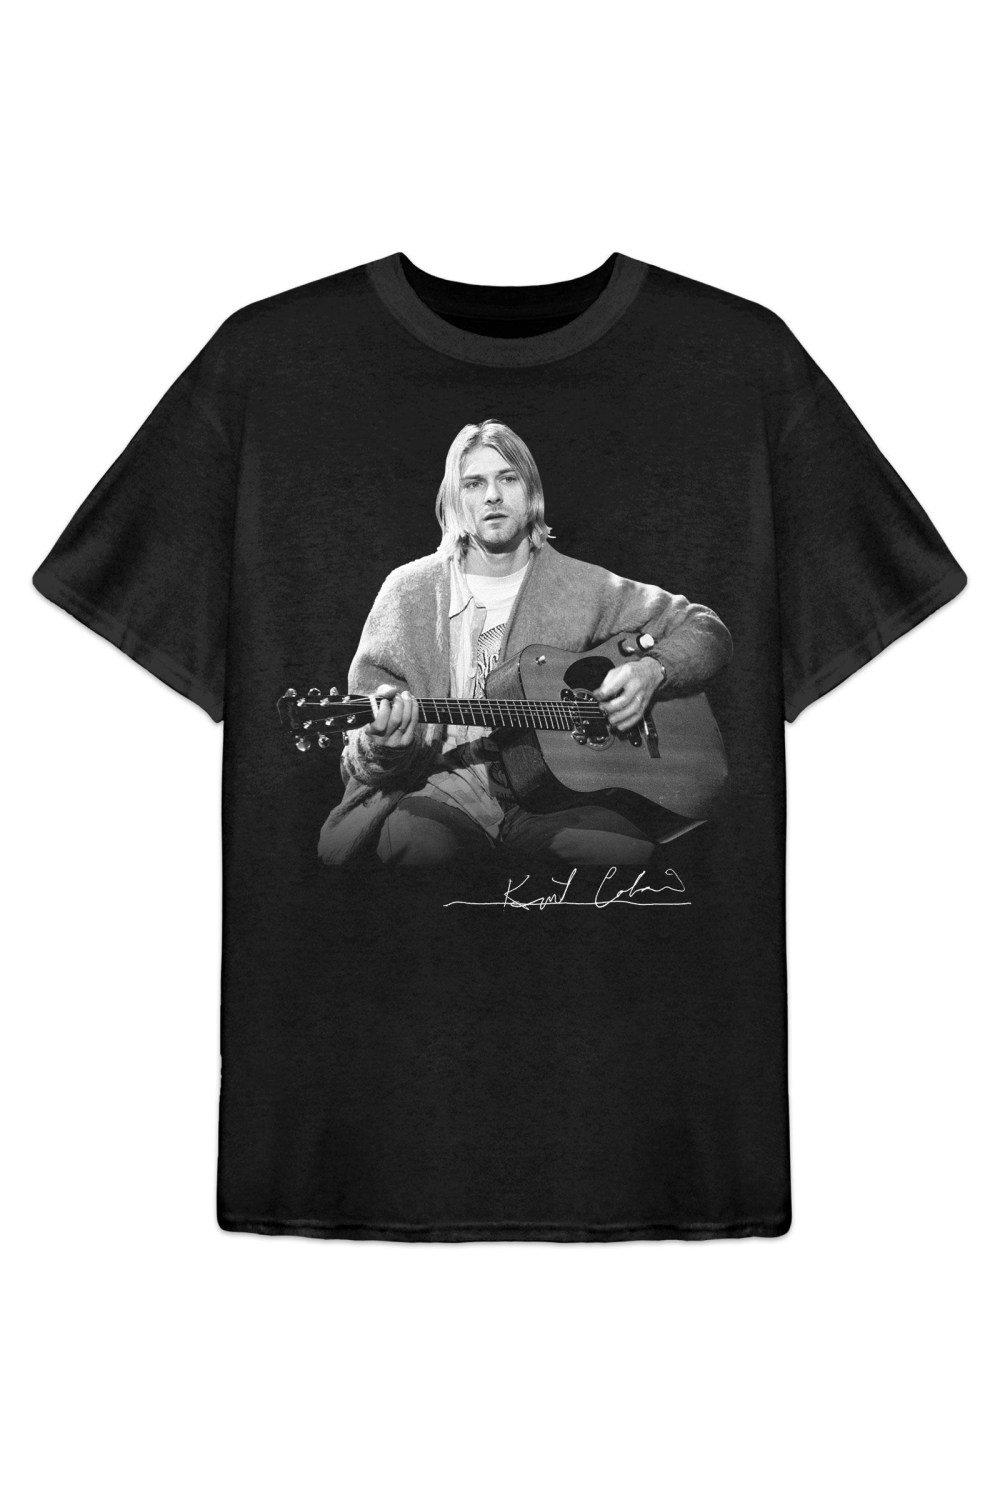 3x5 футов jeep flag полиэстер цифровая печатная фотография для автомобильного клуба Хлопковая футболка для фотосессии с гитарой Live Kurt Cobain, черный